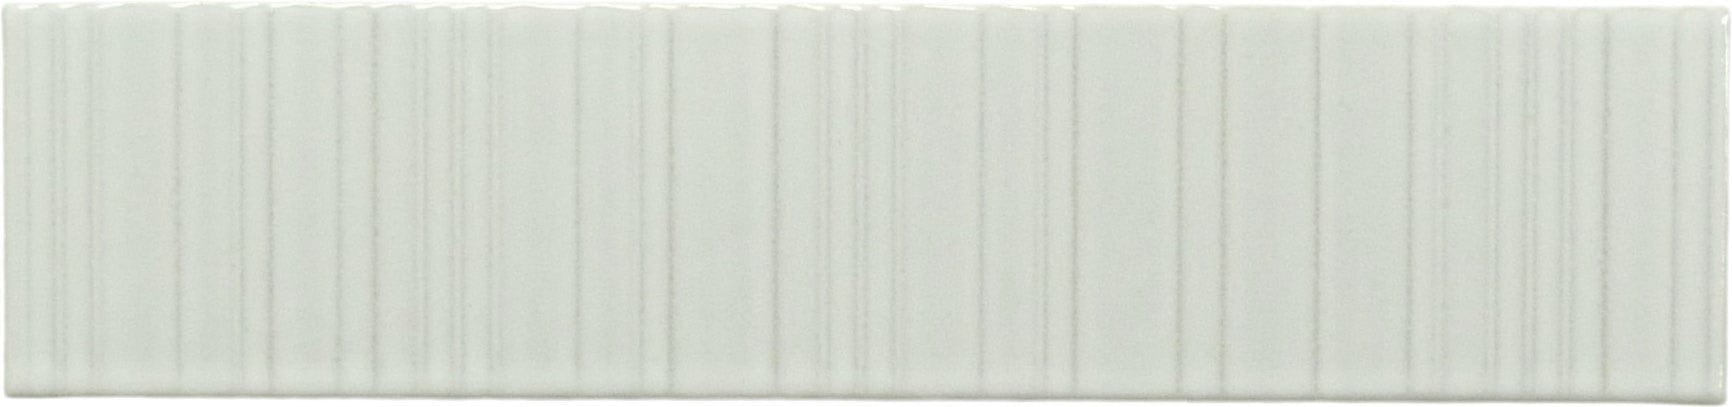 Illusion Dover White Rippled Bar 2x8 Glossy Porcelain Tile Regency